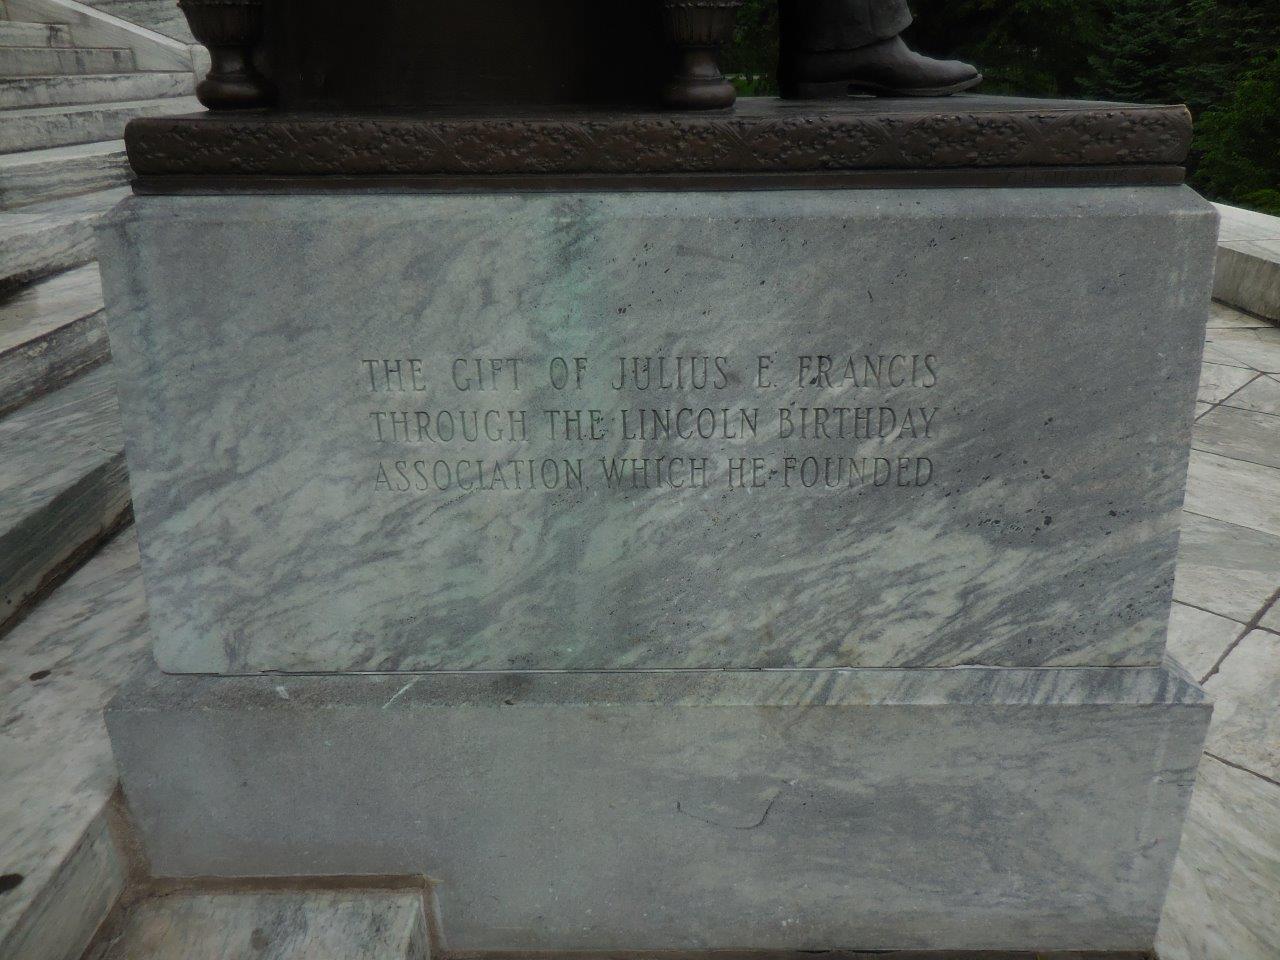 Abraham Lincoln statue